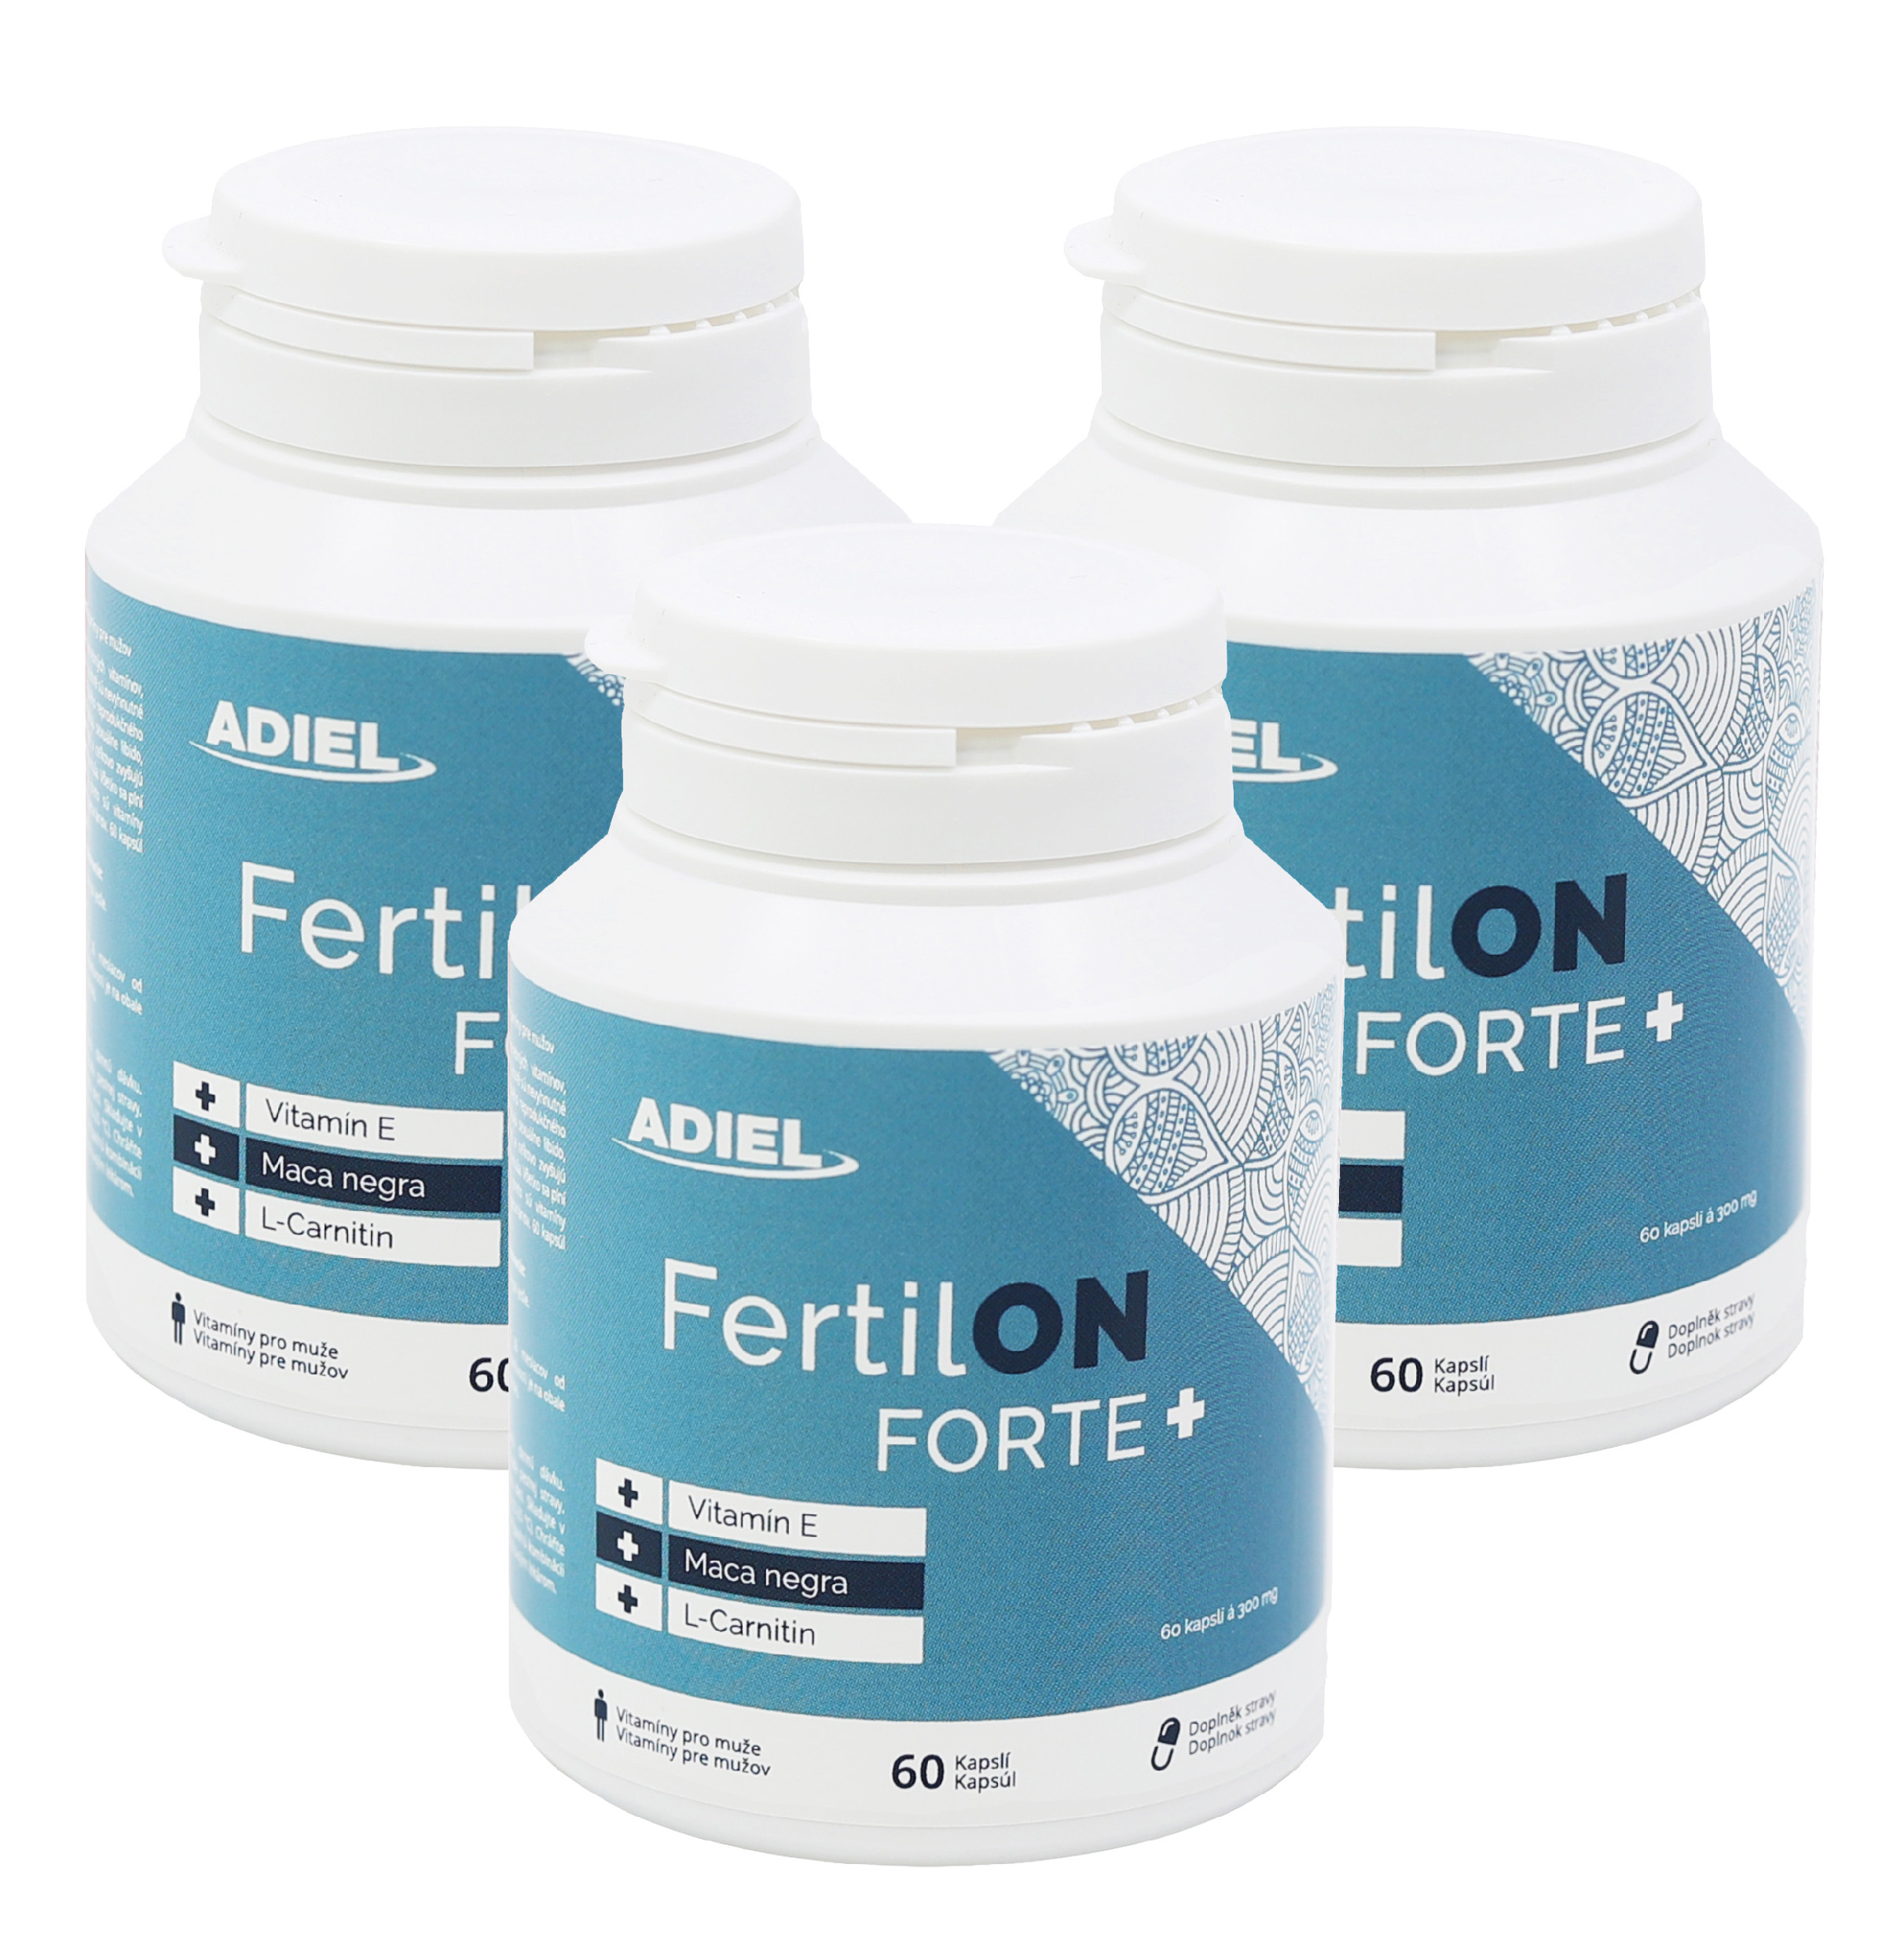 E-shop ADIEL FertilON forte plus – vitamíny pre mužov 60 kapslí 3 ks v balenie: 3x60 kapslí